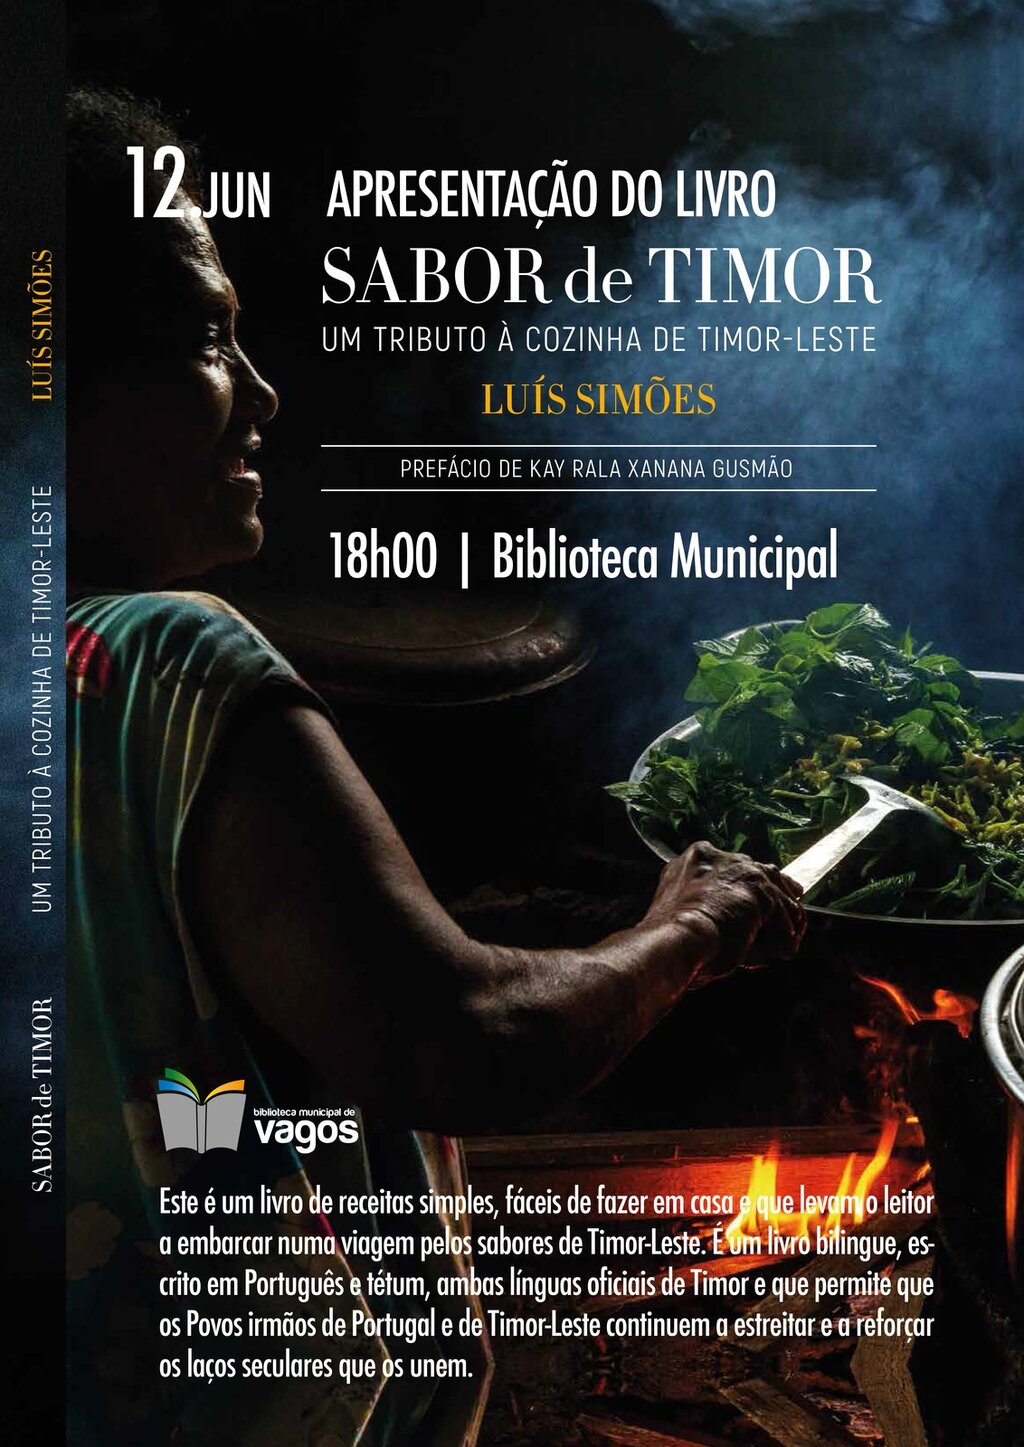 Apresentação do Livro “Sabor de Timor”